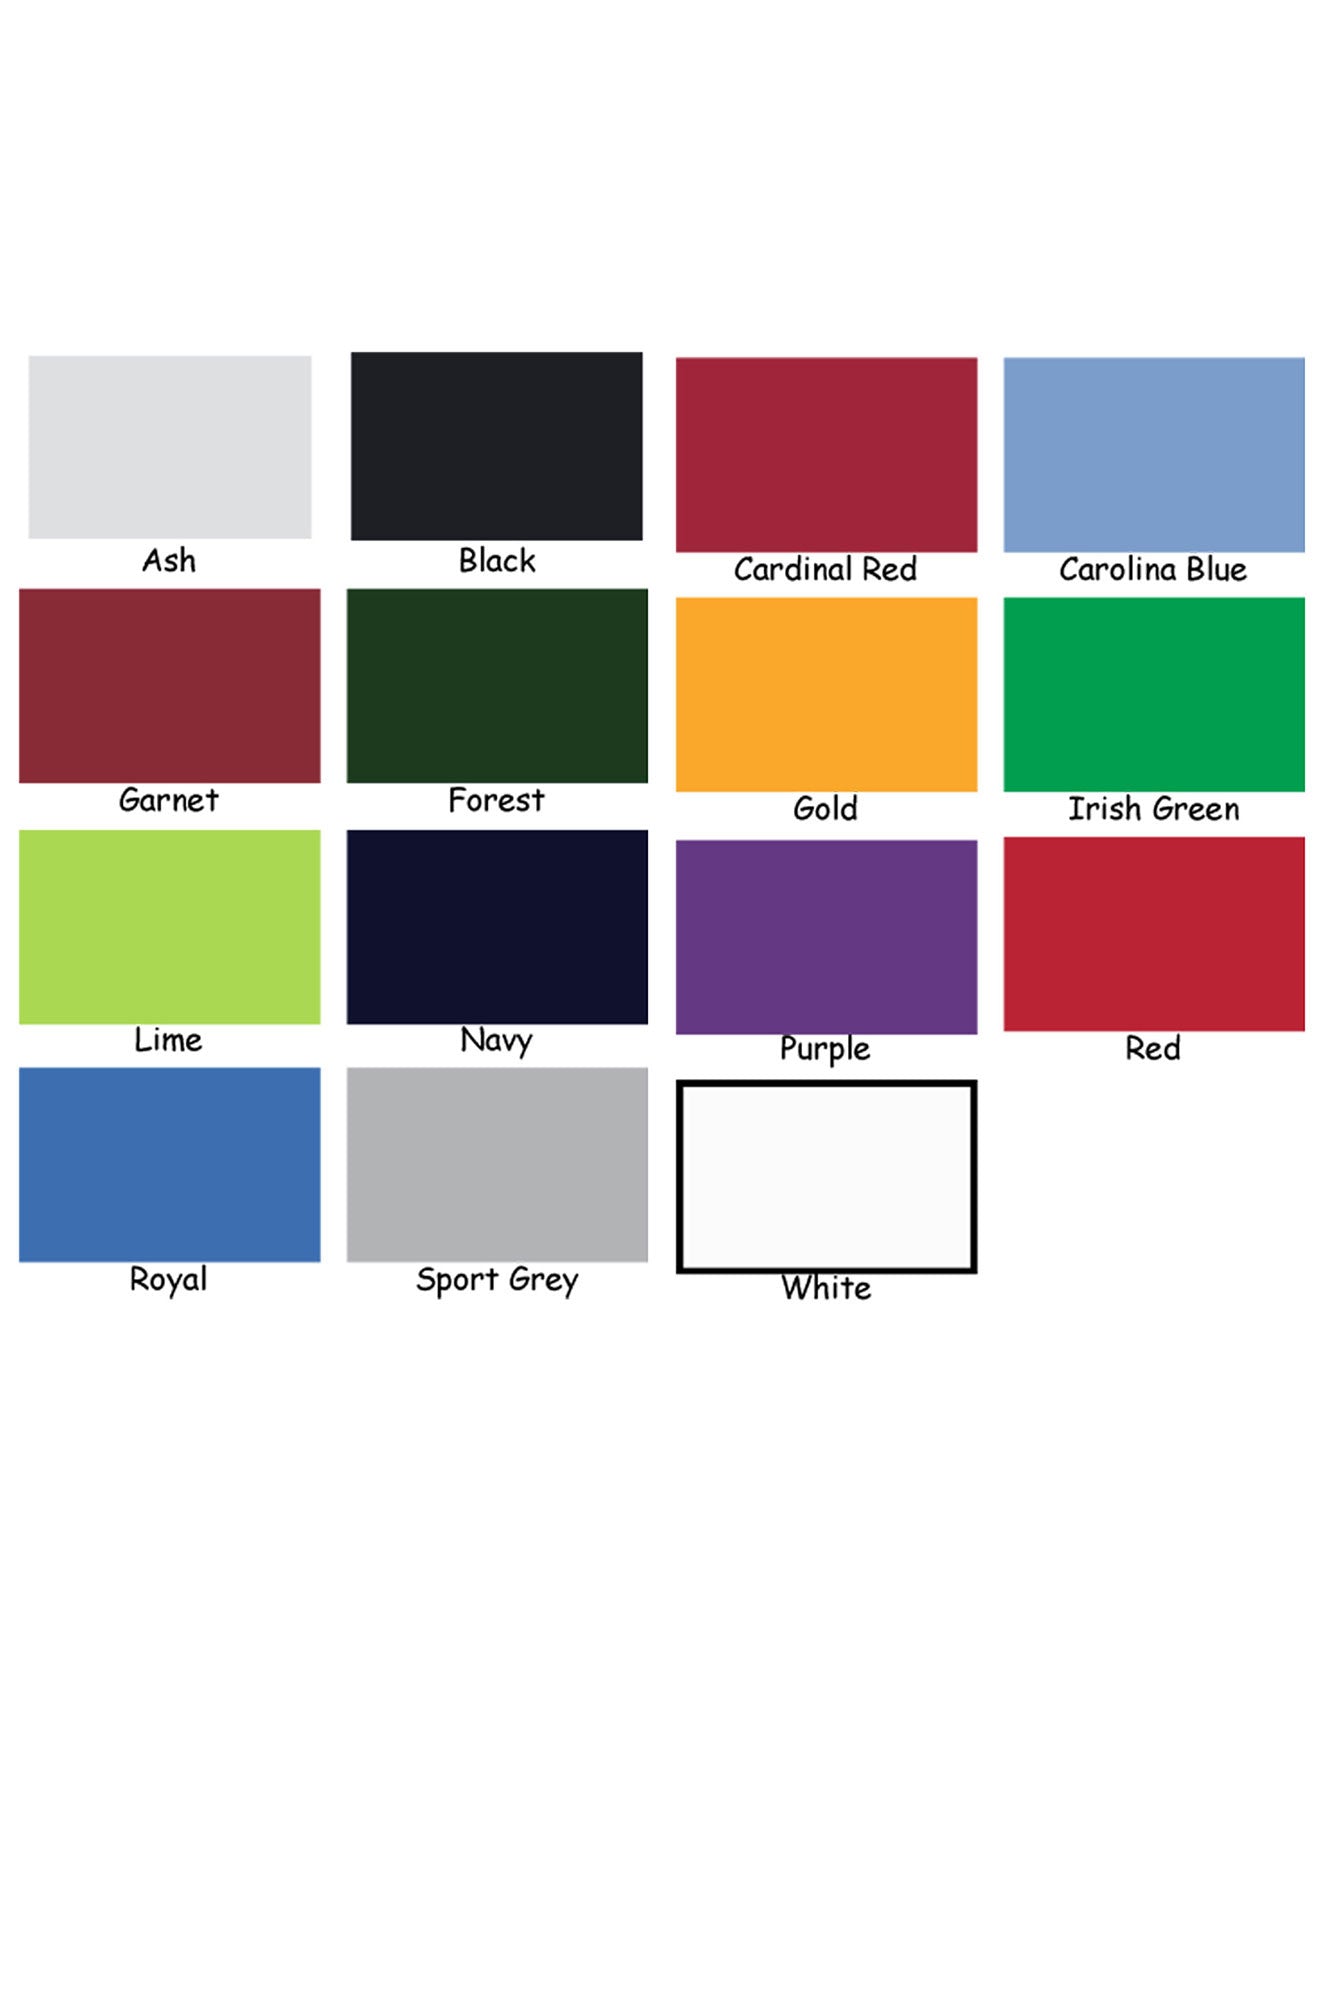 Gildan Color Chart Long Sleeve